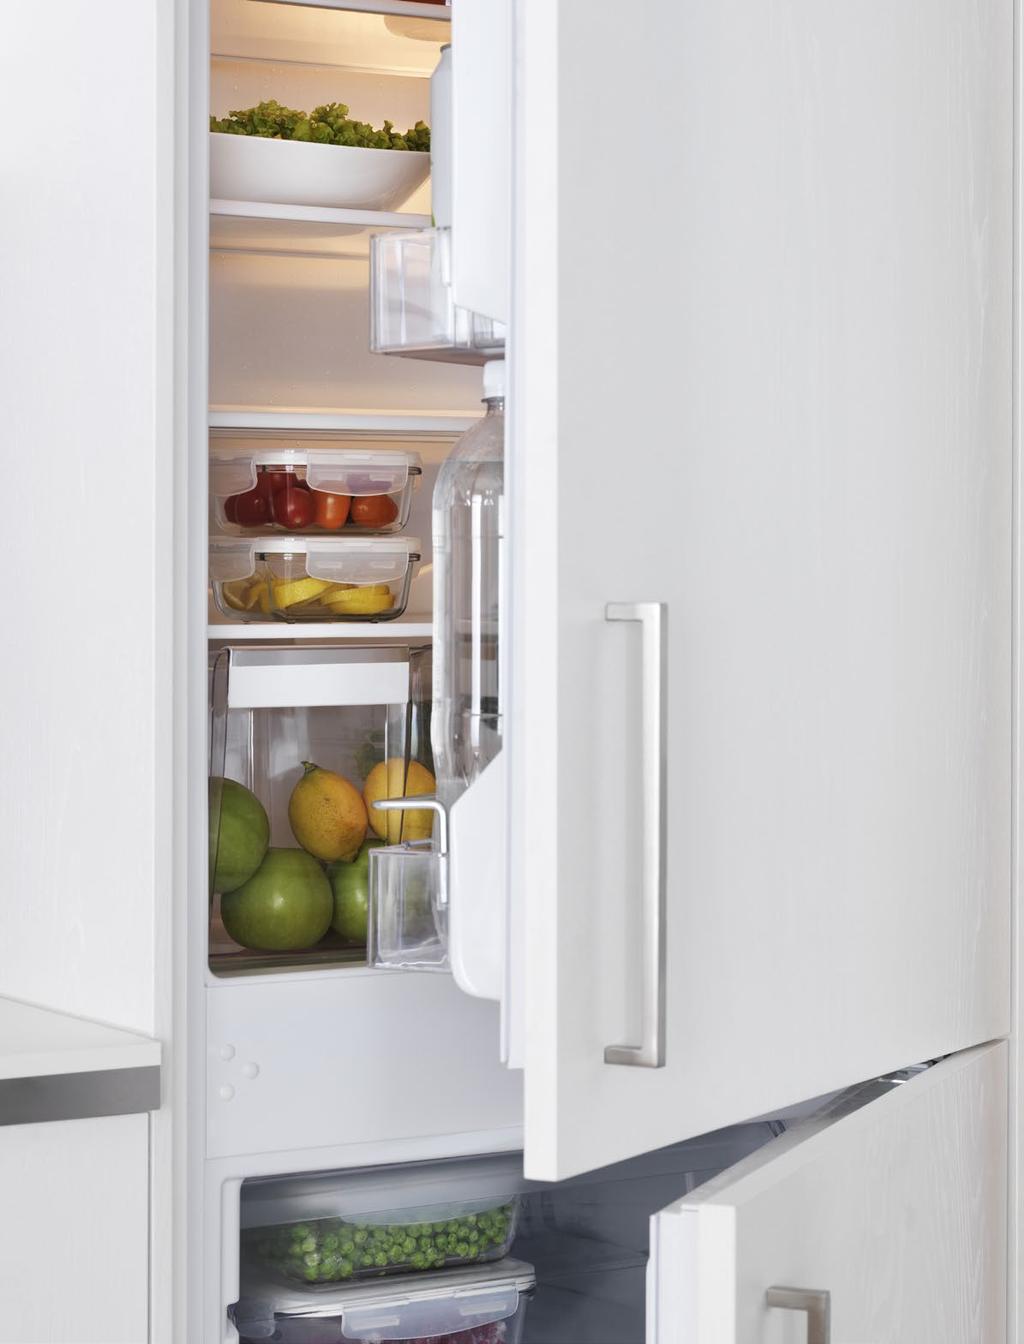 LODÓWKI I ZAMRAŻARKI Oferowane w IKEA lodówki i zamrażarki są wyposażone w szereg przydatnych funkcji oraz praktyczne akcesoria, dzięki którym przechowywana żywność dłużej zachowa świeżość.